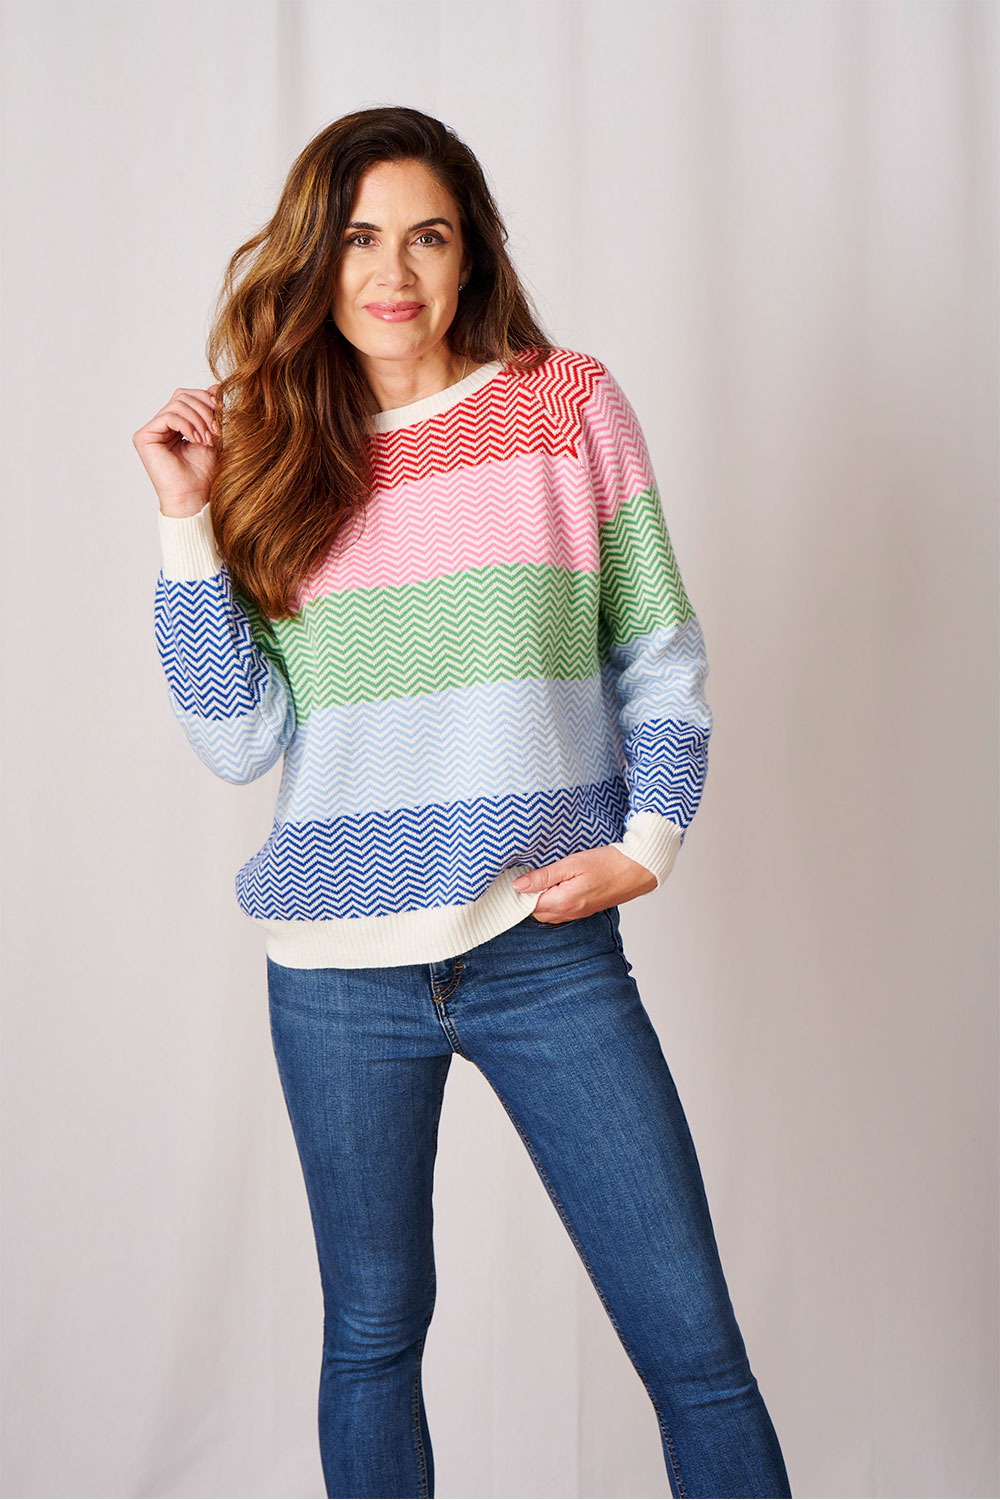 Luella Chamonix Cashmere knit Sweater